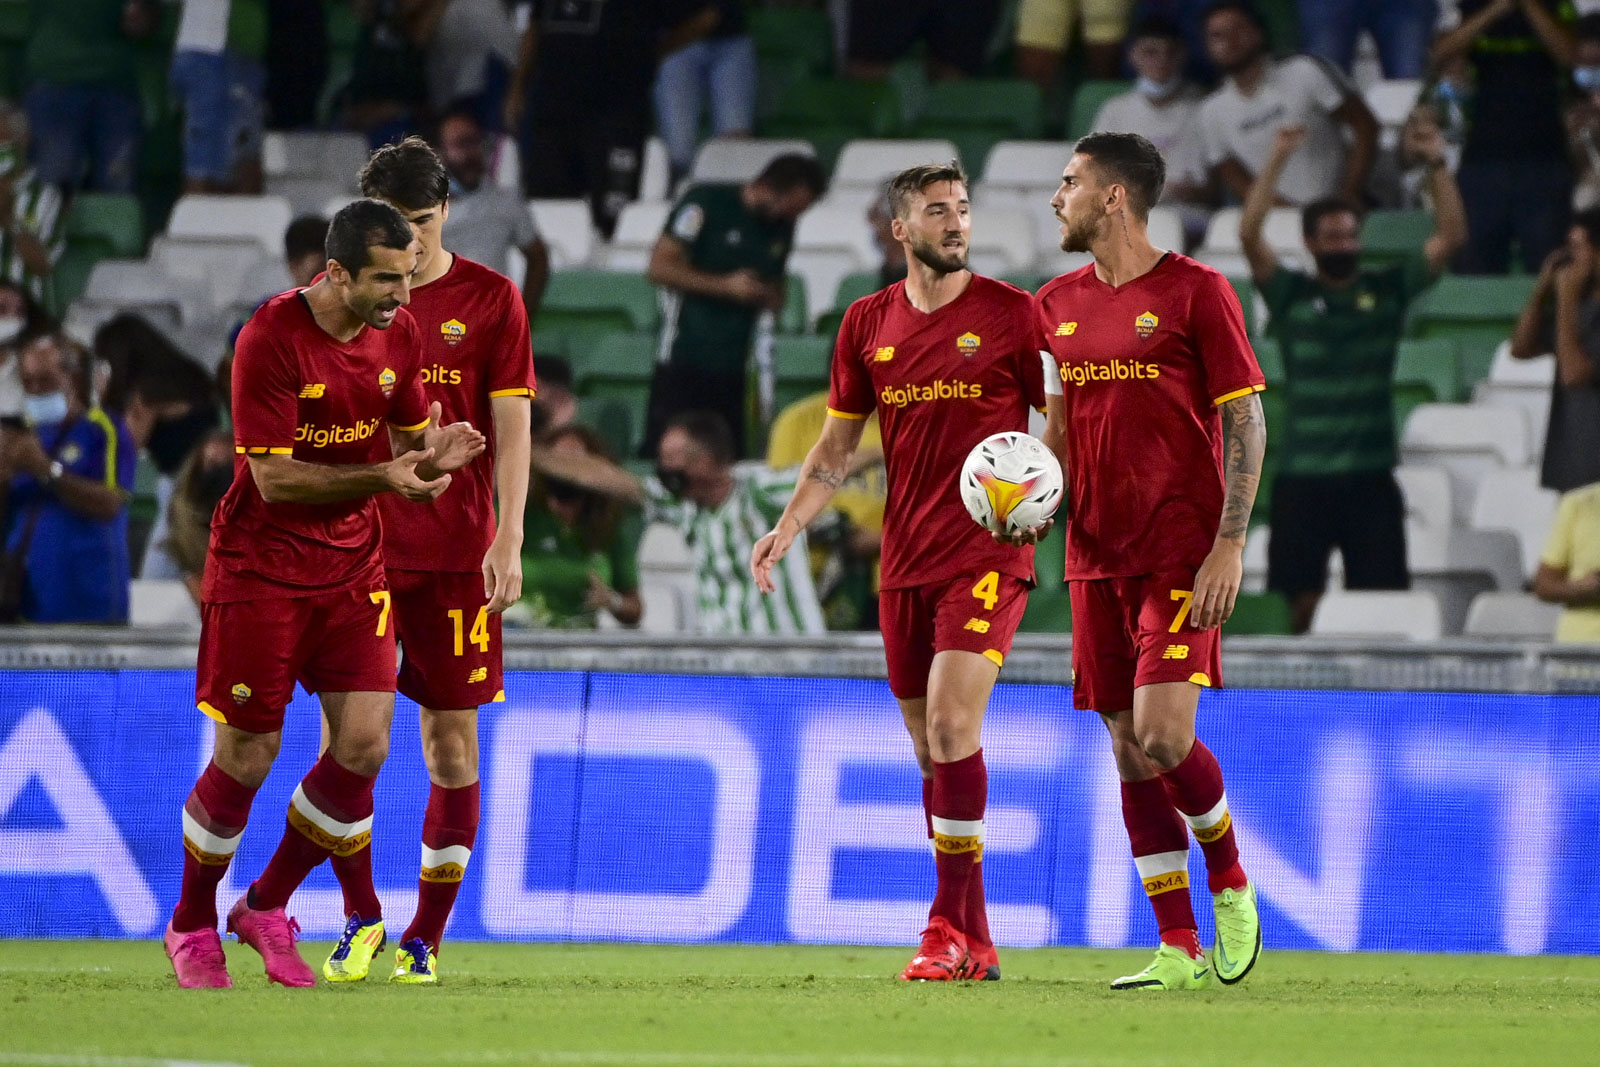 Mourinho bị đuổi khỏi sân khi AS Roma thua 2-5 - Bóng Đá